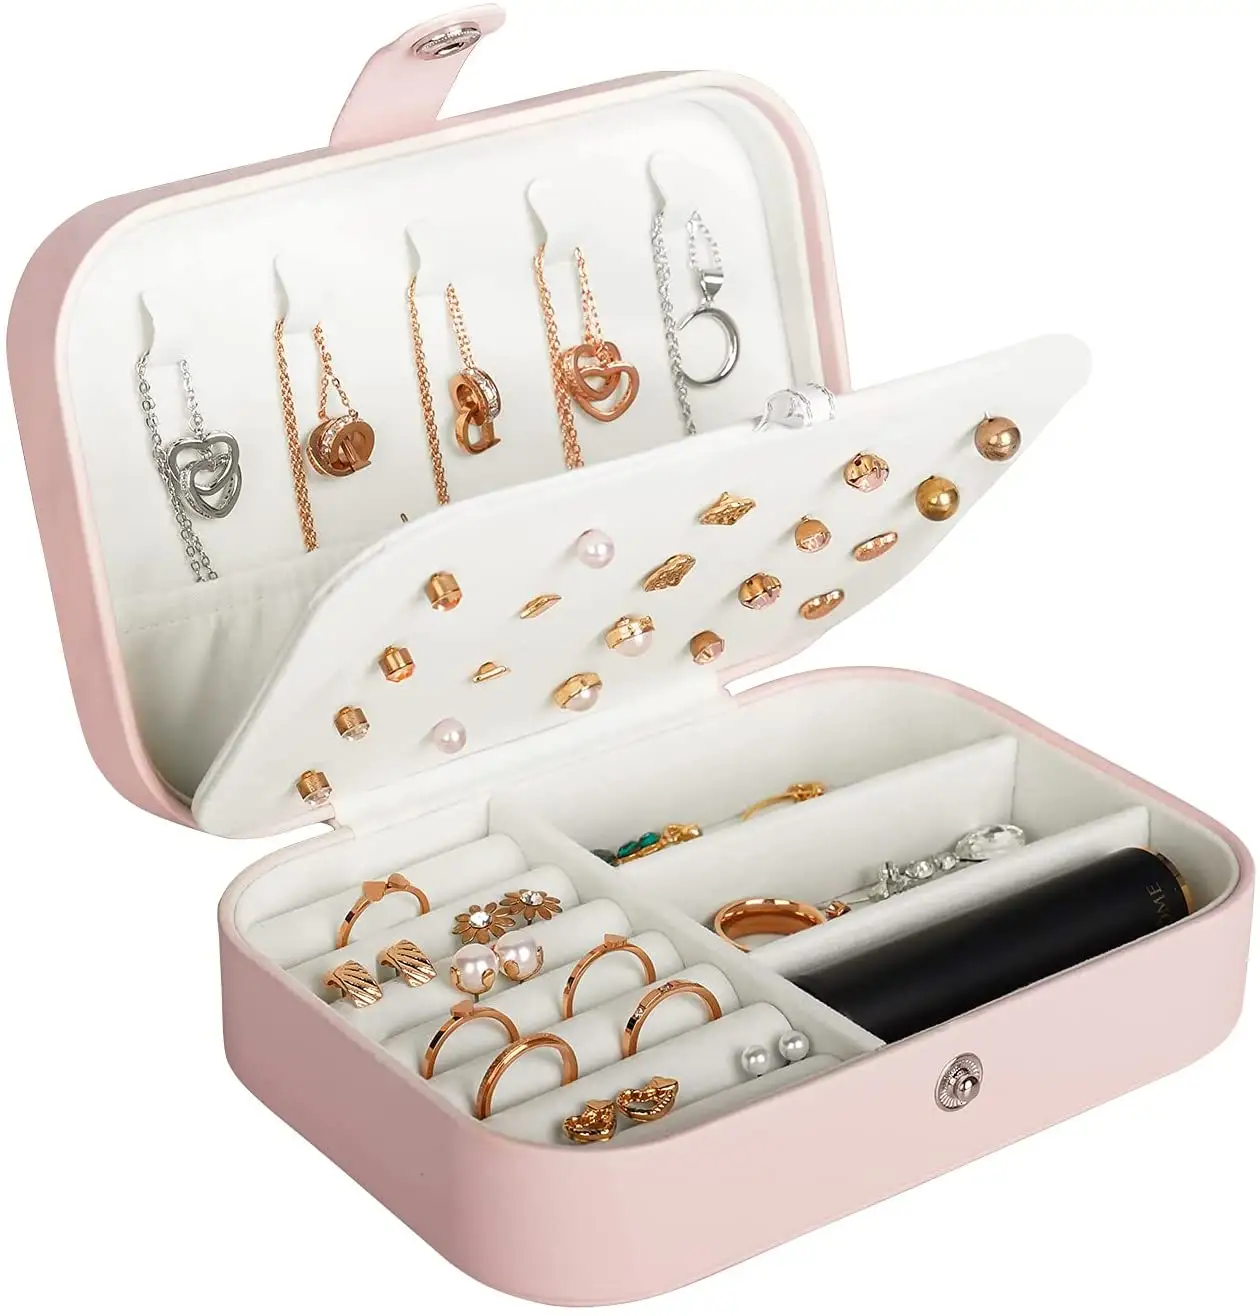 Portable Jewelry Box Jewelry Organizer Display Travel Jewelry Case Boxes Button Leather Storage Zipper Jewelers Joyero